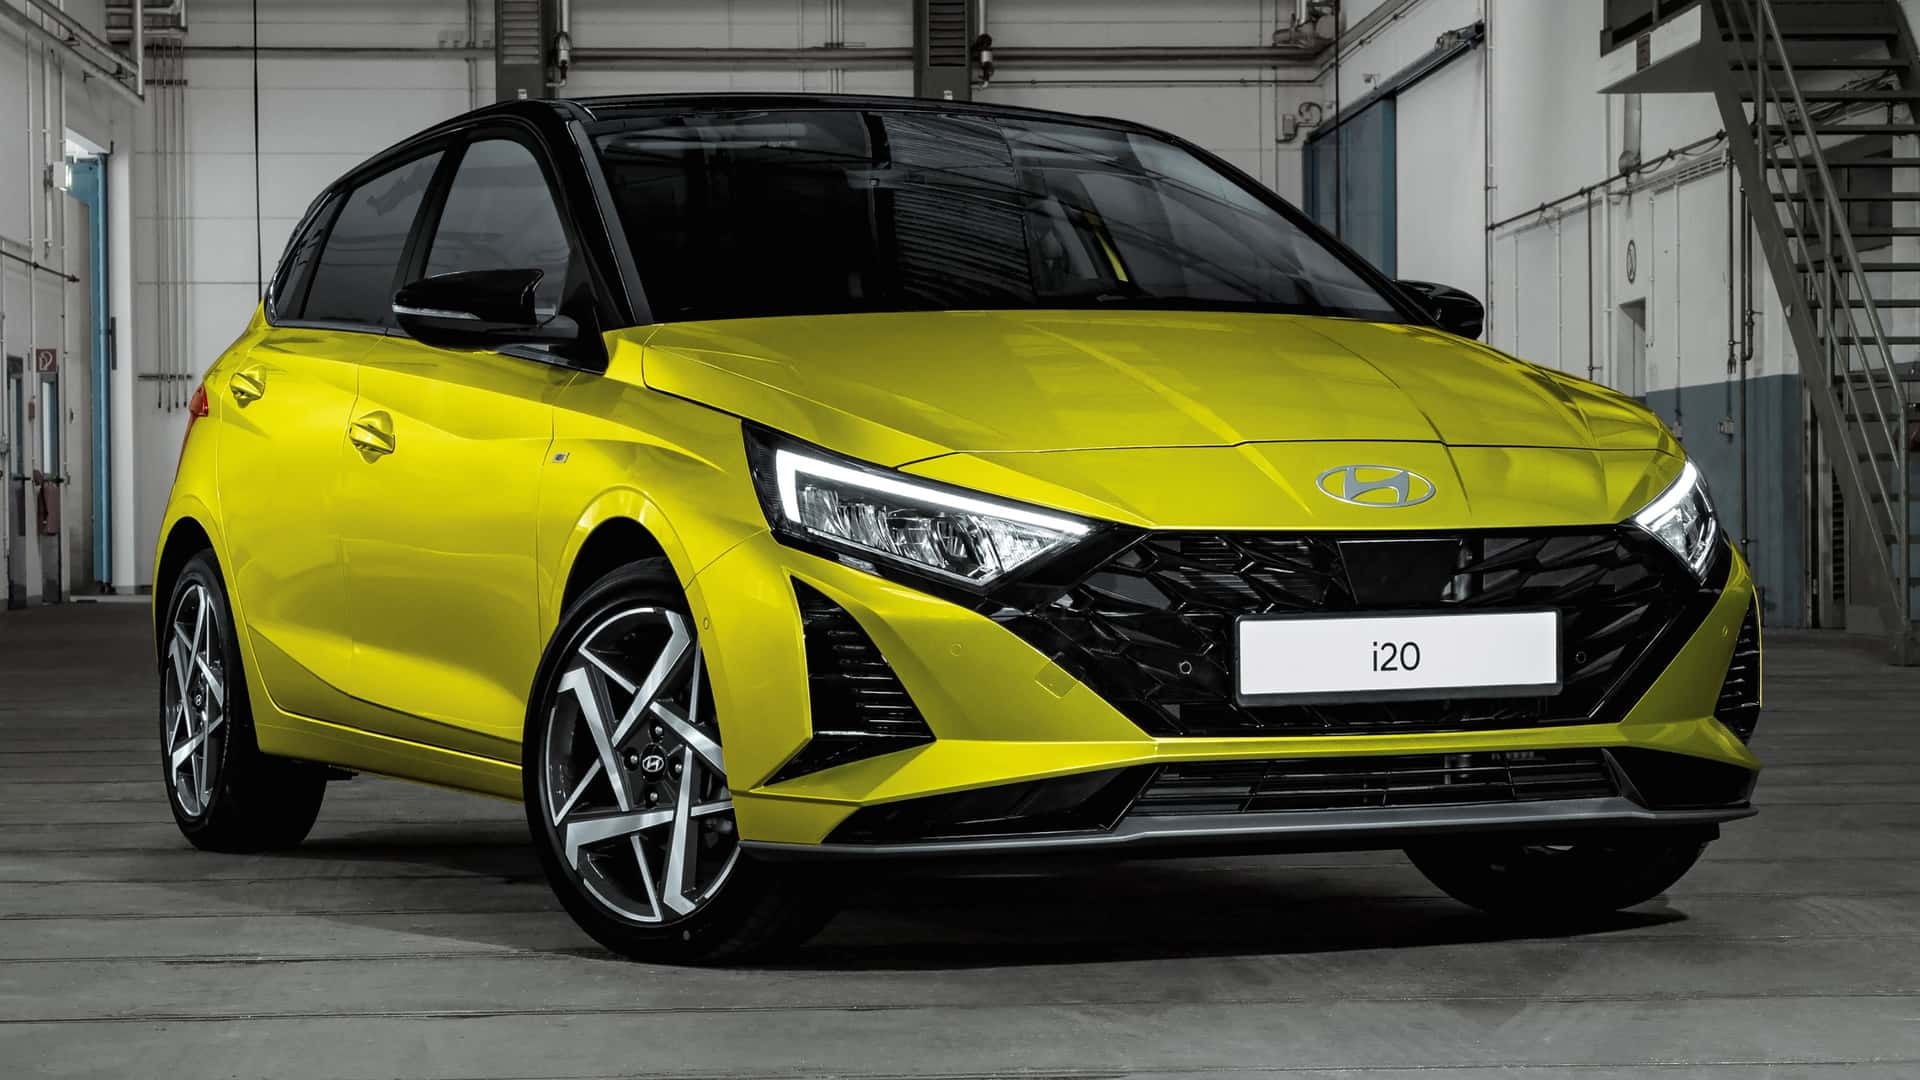 Vista frontal y lateral del Hyundai i20 en color amarillo impactante.